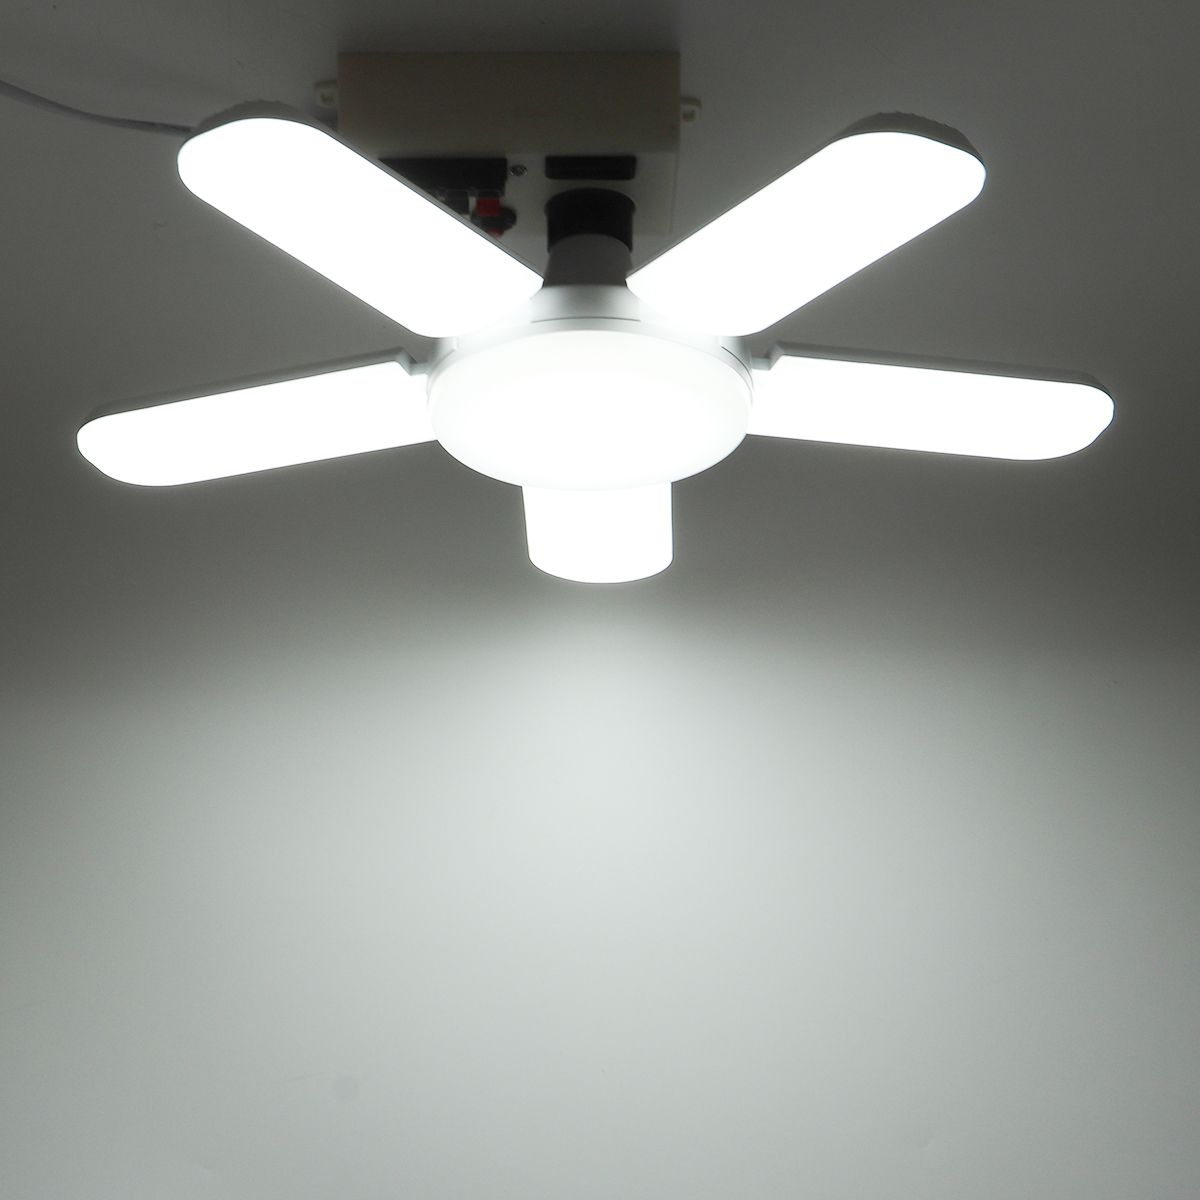 51-LED-Garage-Light-6500K-Foldable-Deformabl-Ceiling-Fixture-Light-Shop-Workshop-Lamp-1737877